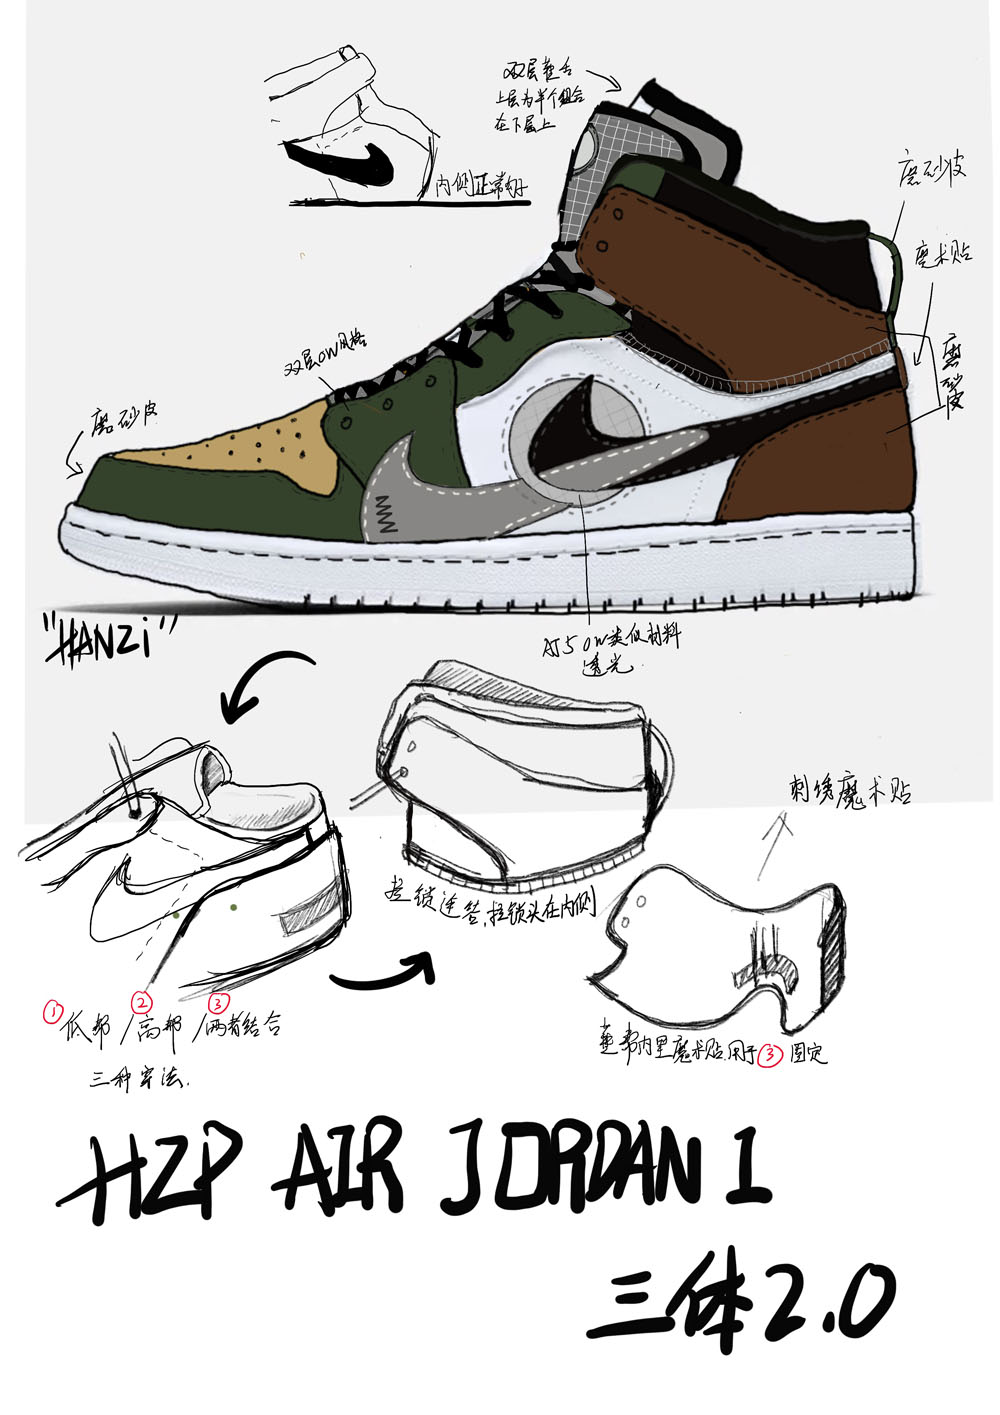 AJ1,Air Jordan 1  独立编号，特殊鞋盒！限量 333 双的三体 AJ1 明日发售